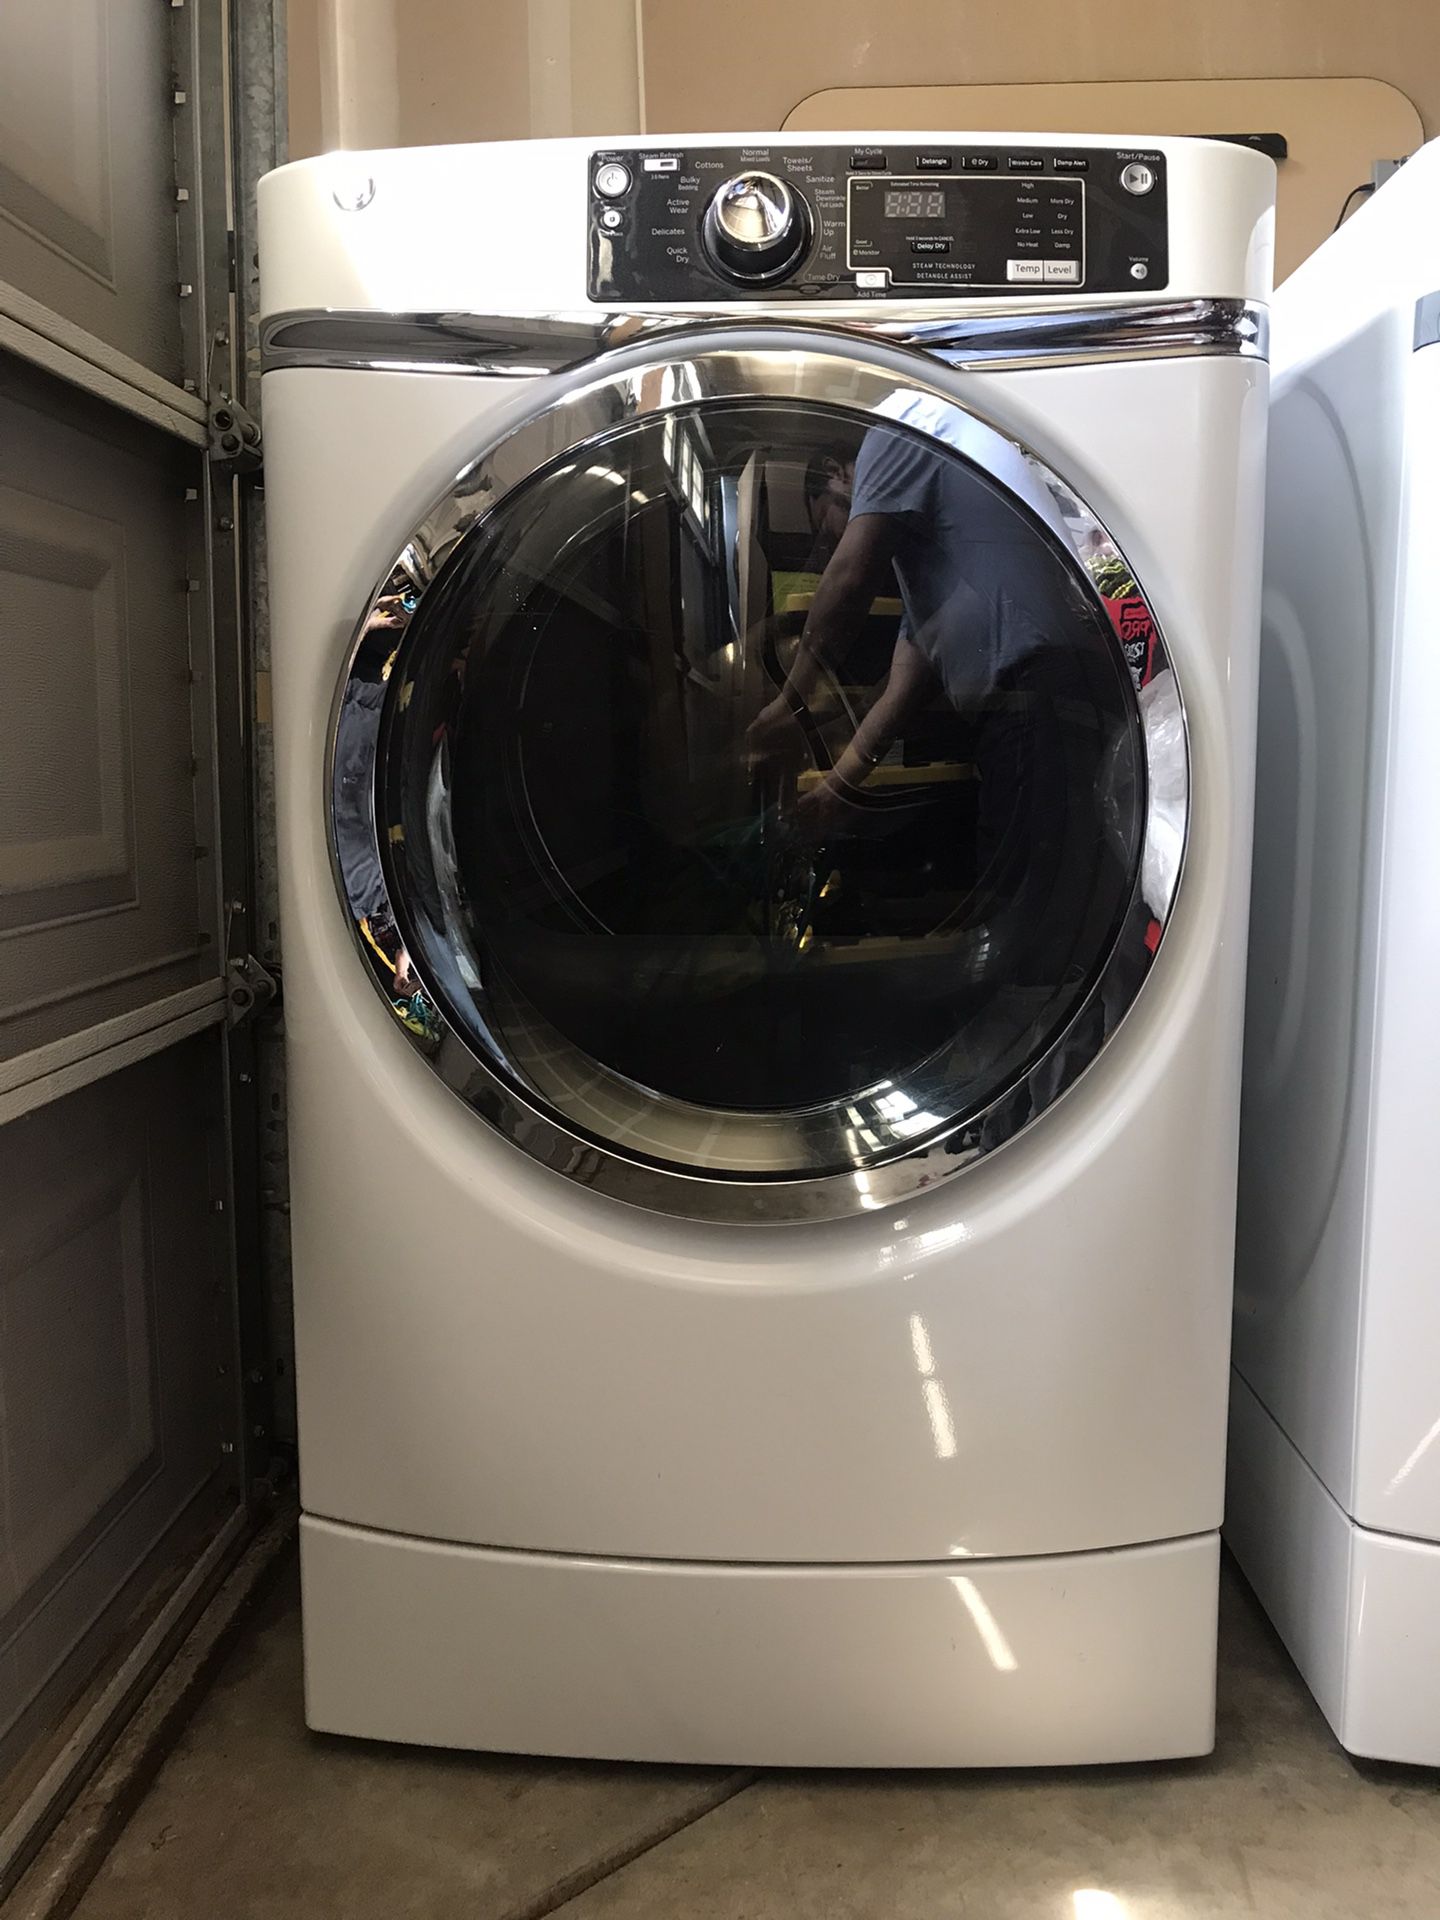 GE Washer & Dryer (240V)